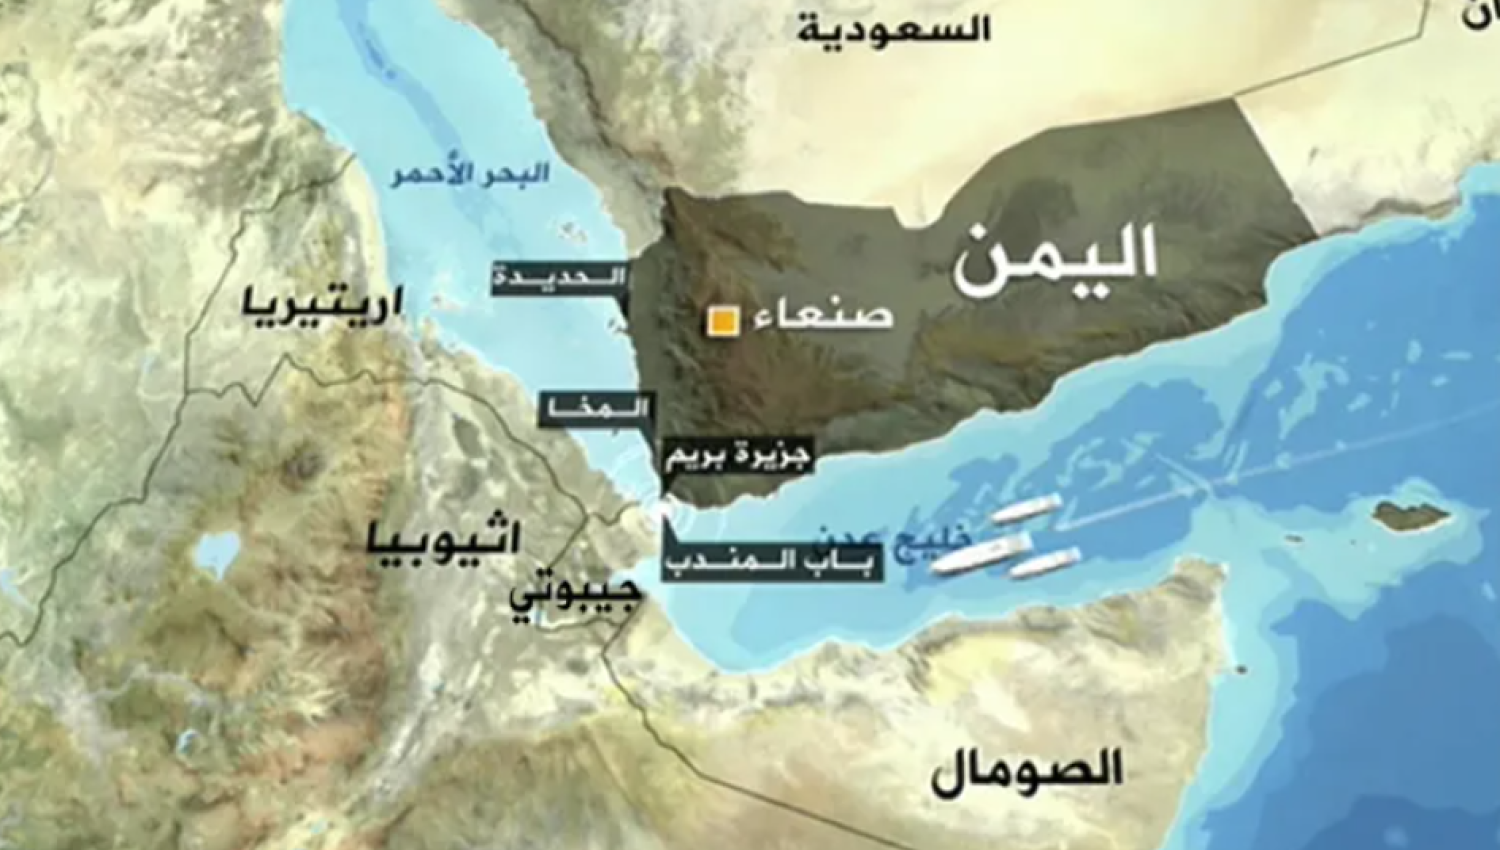 اليمن يفرض إرادته في البحر: شركات الشحن تستجيب للتحذيرات